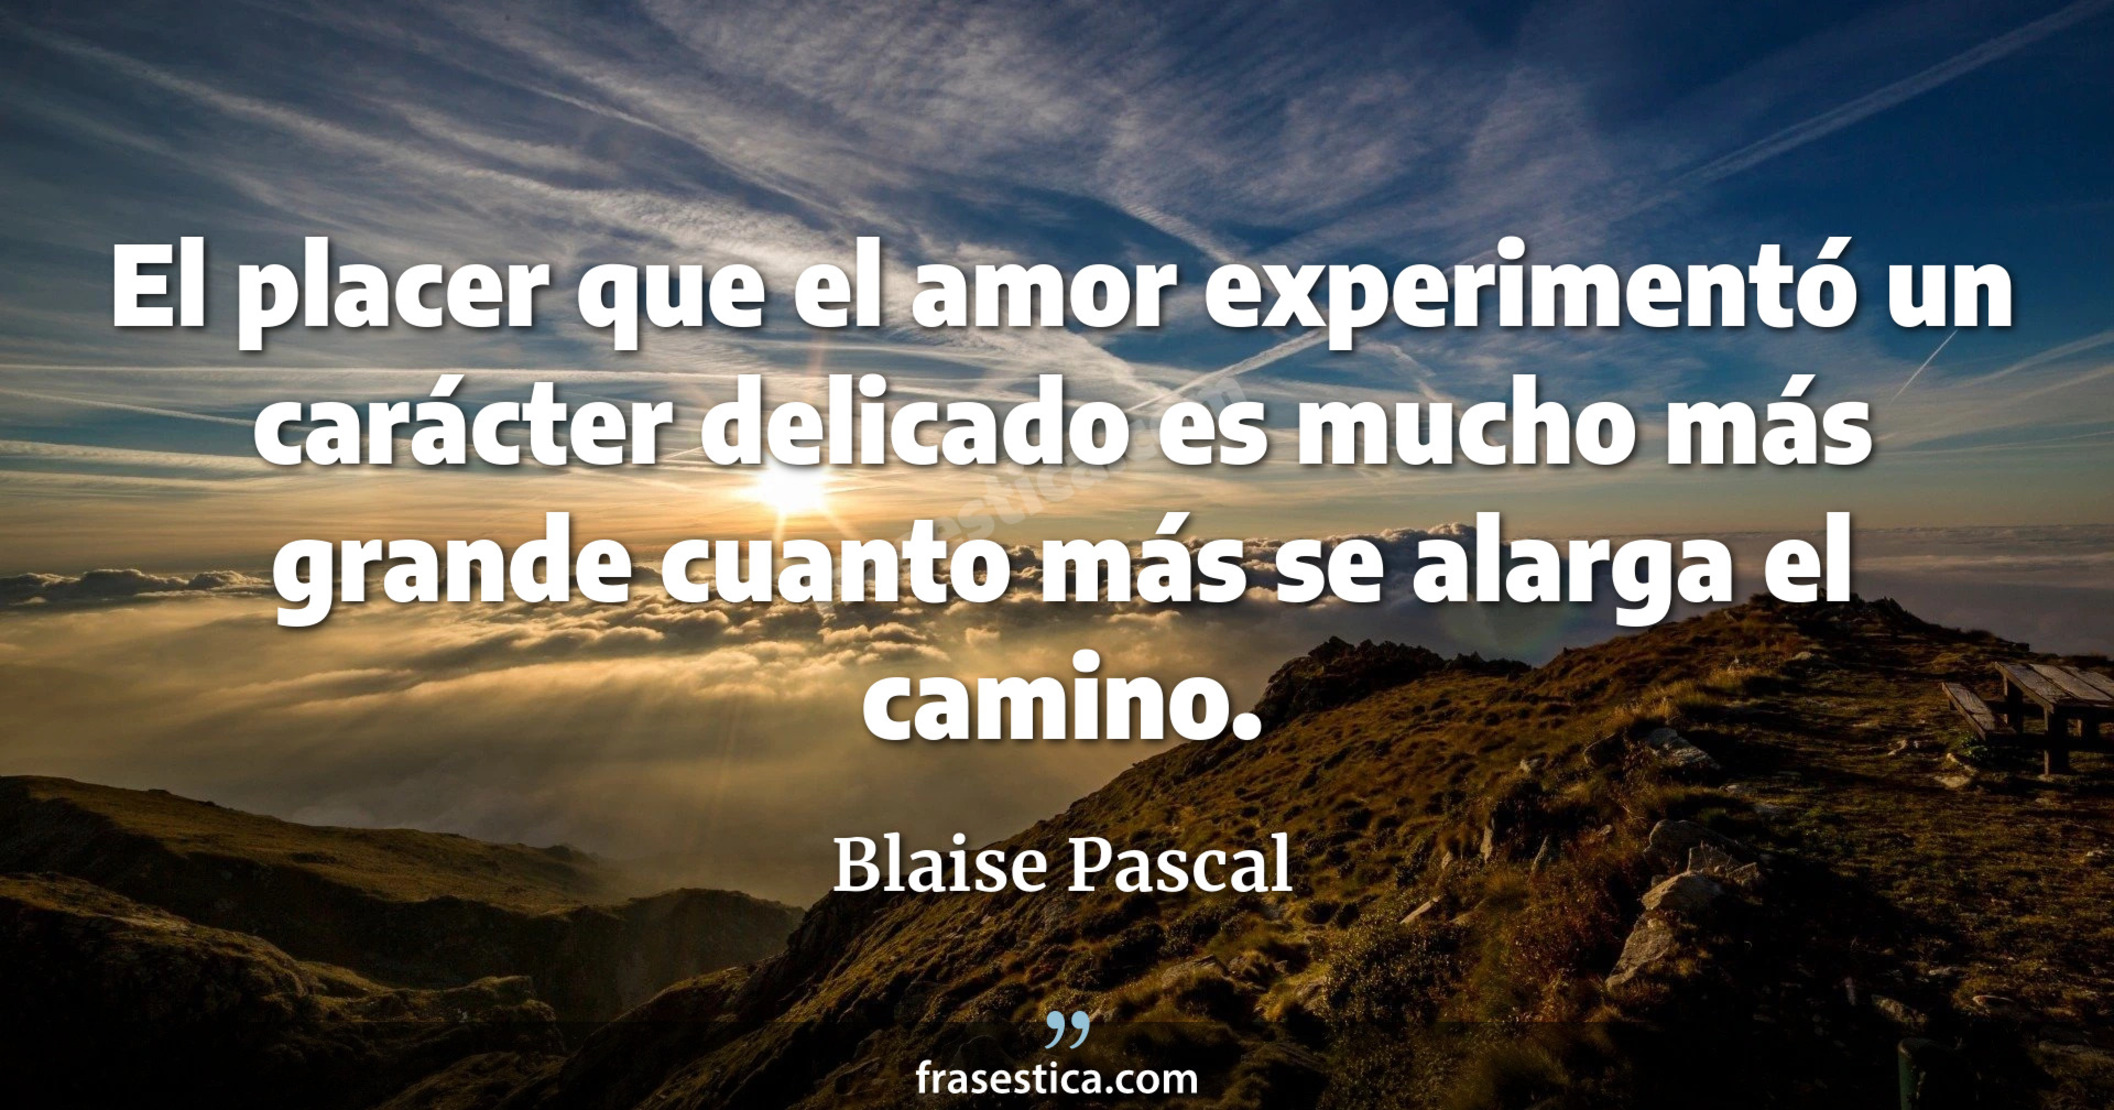 El placer que el amor experimentó un carácter delicado es mucho más grande cuanto más se alarga el camino. - Blaise Pascal